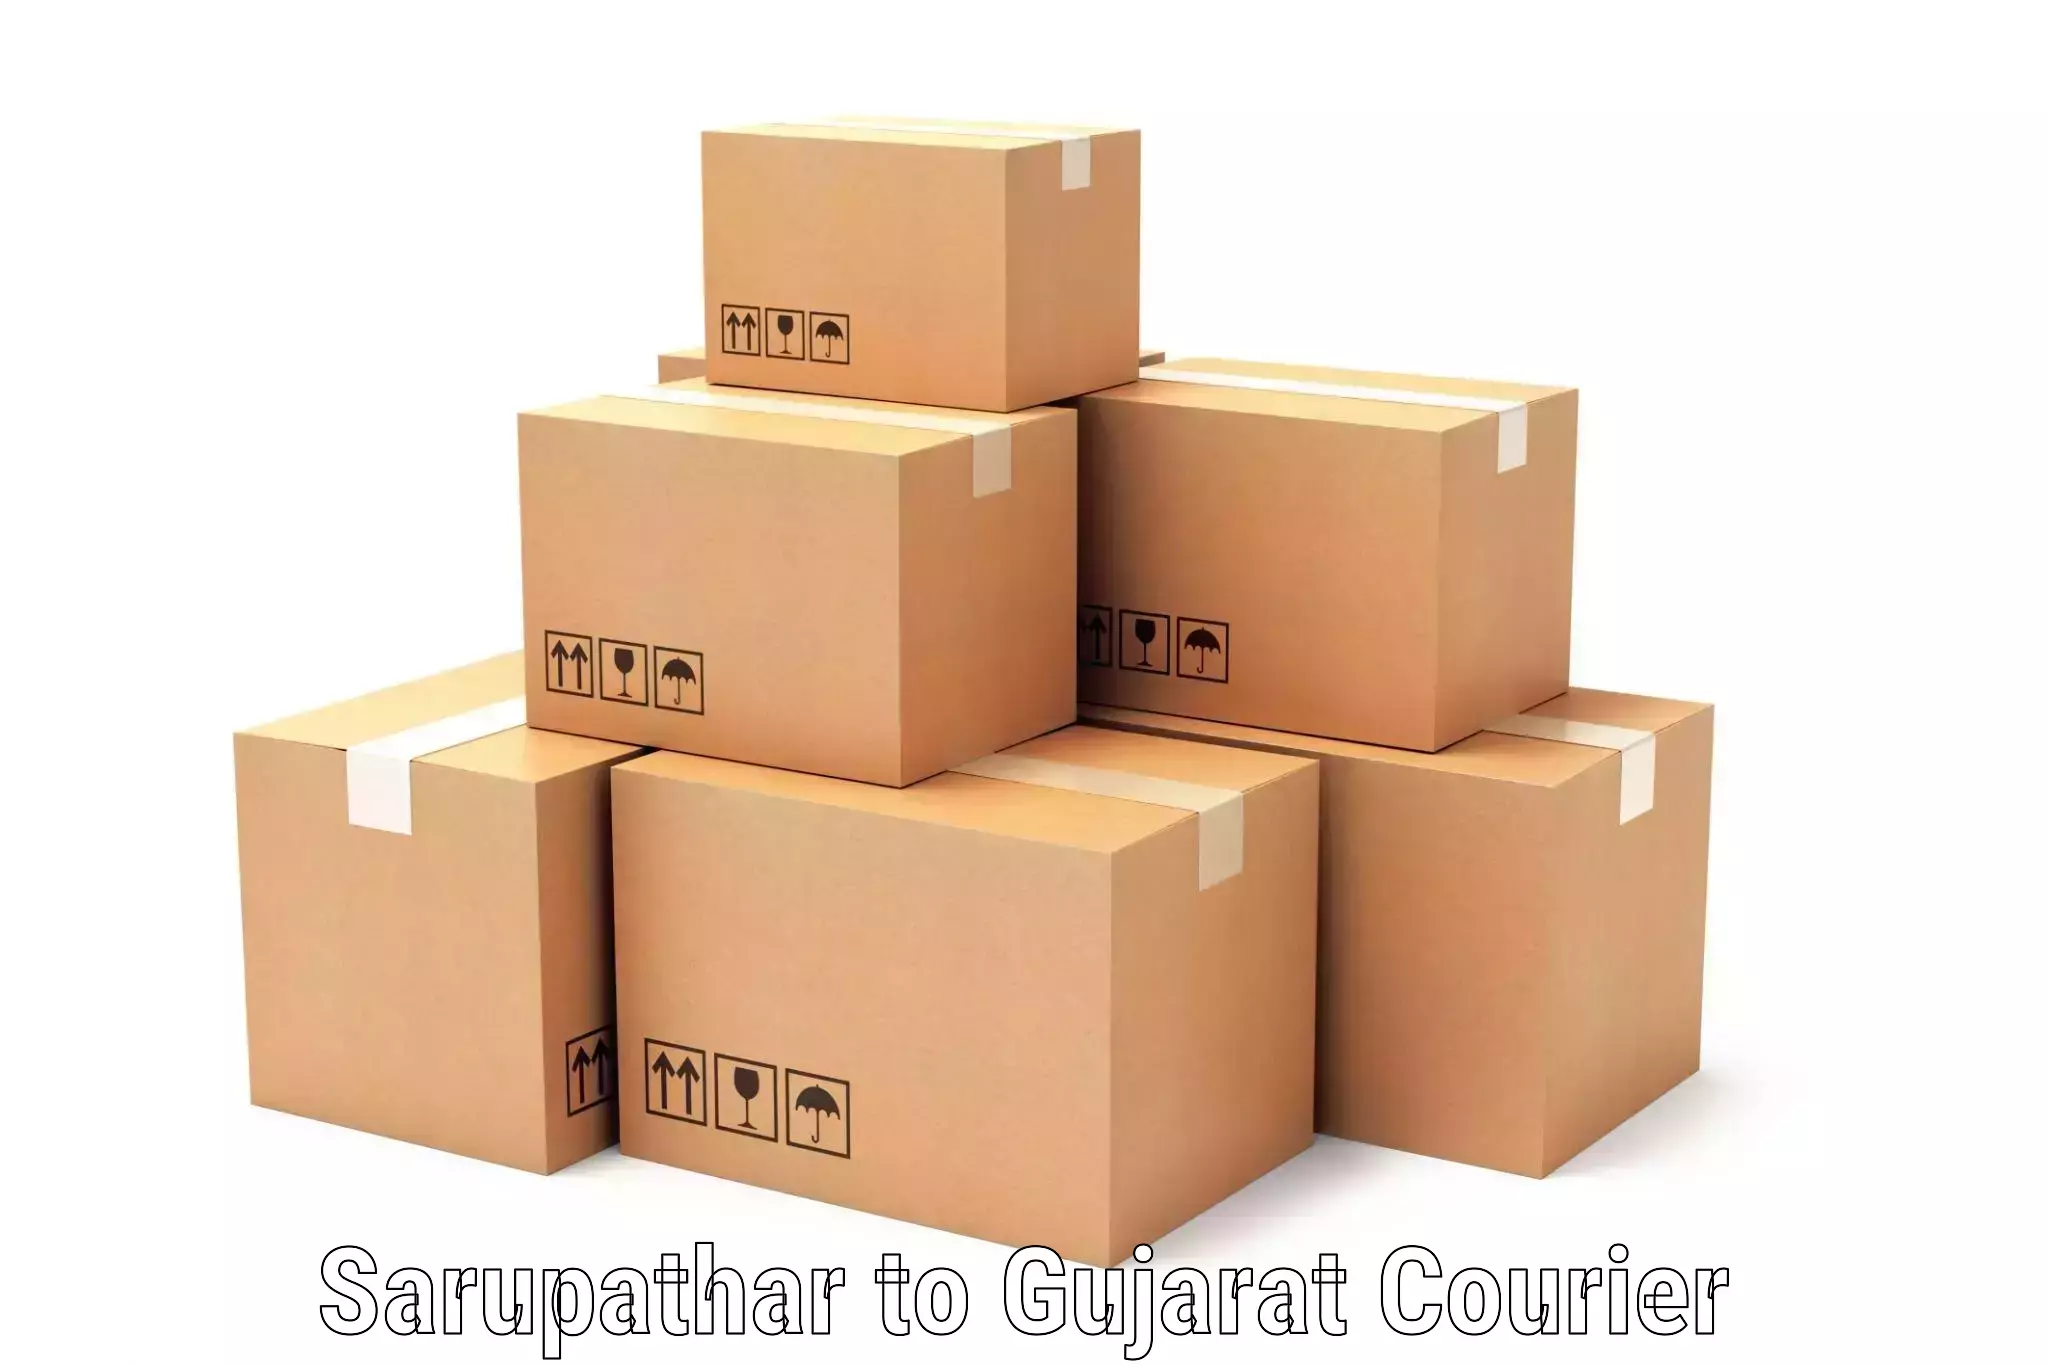 Nationwide shipping coverage Sarupathar to Vadodara